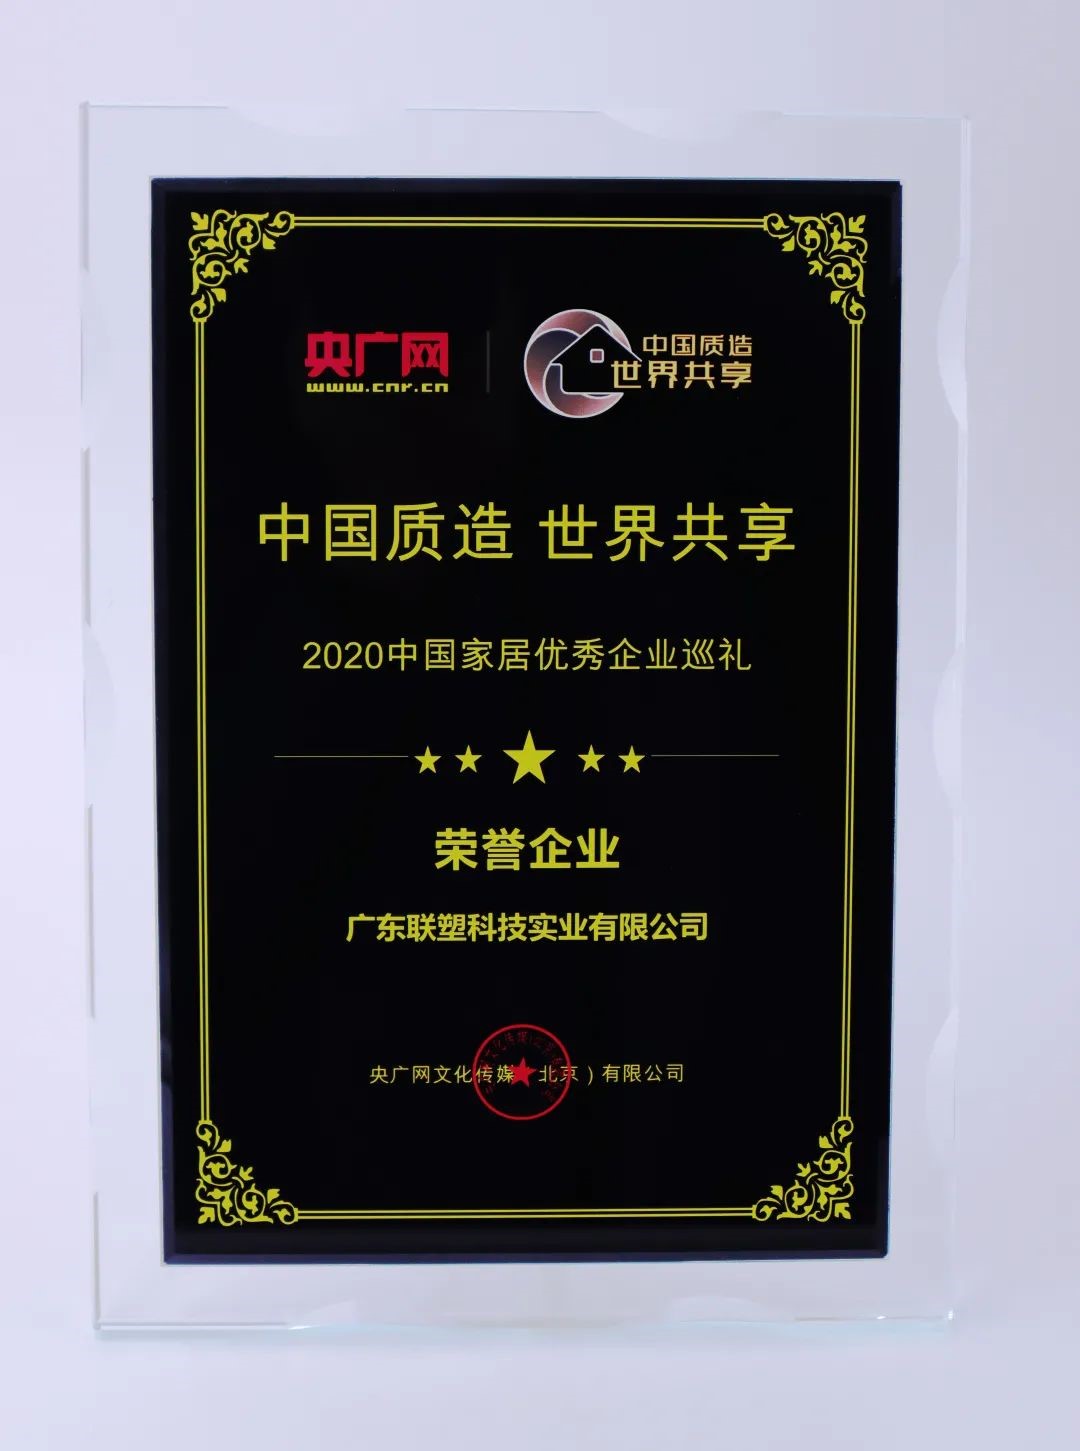 中国欧宝体育app荣获“2020中国家居优秀企业巡礼荣誉企业”